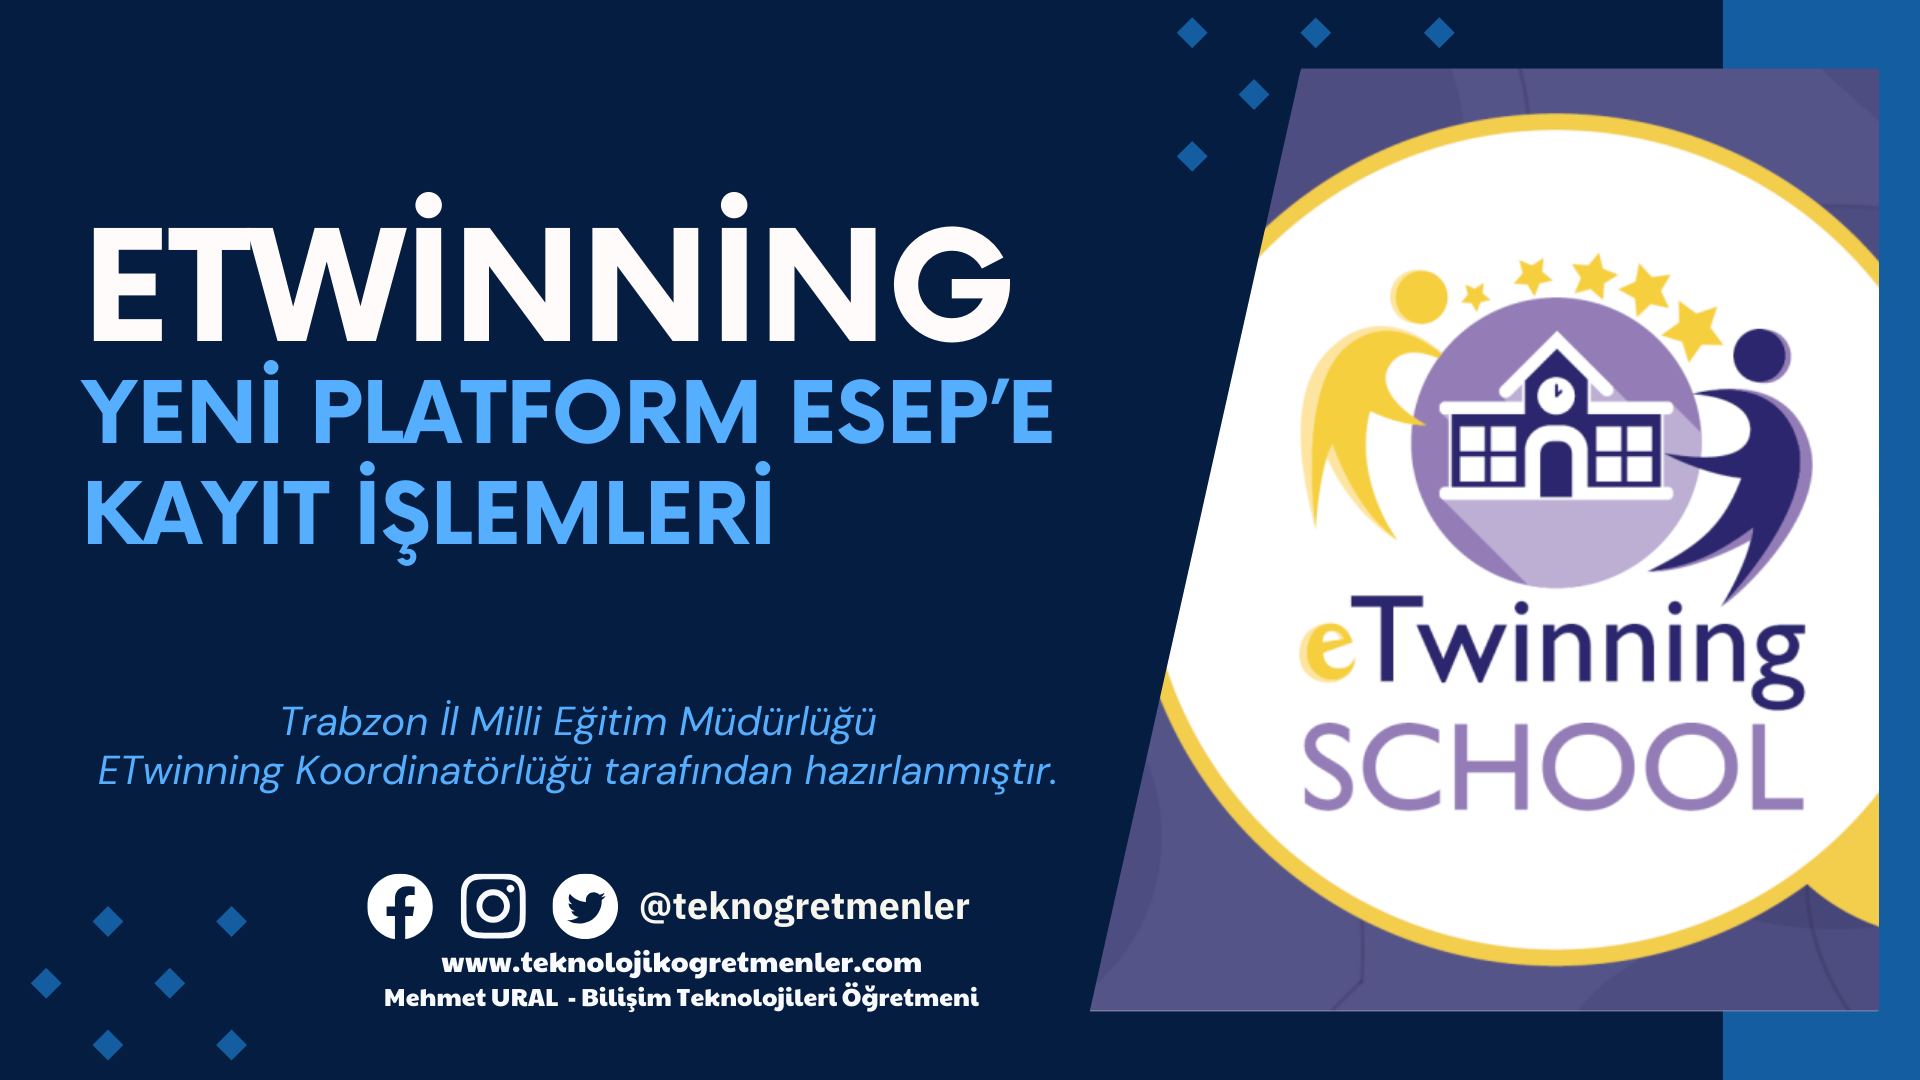 eTwinning Yeni Platform ESEP’e Kayıt İşlemleri